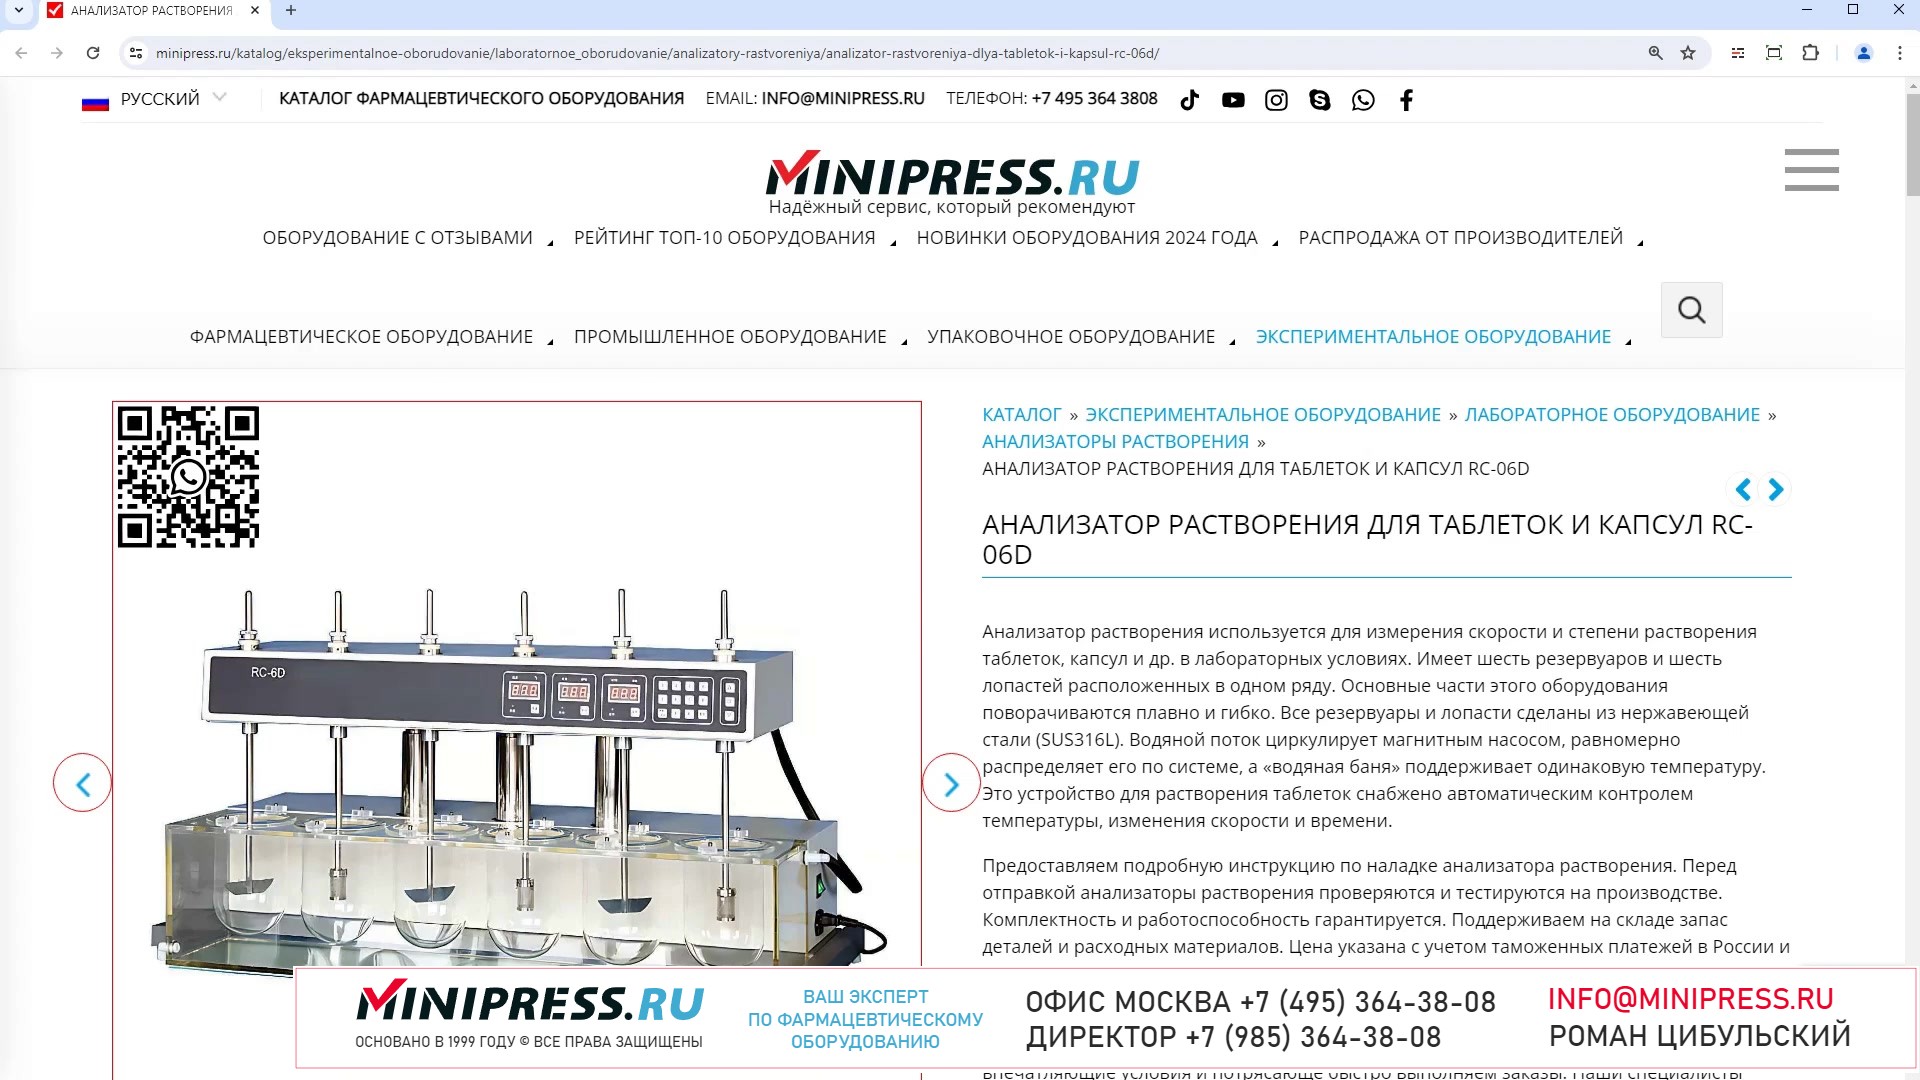 Minipress.ru Анализатор растворения для таблеток и капсул RC-06D